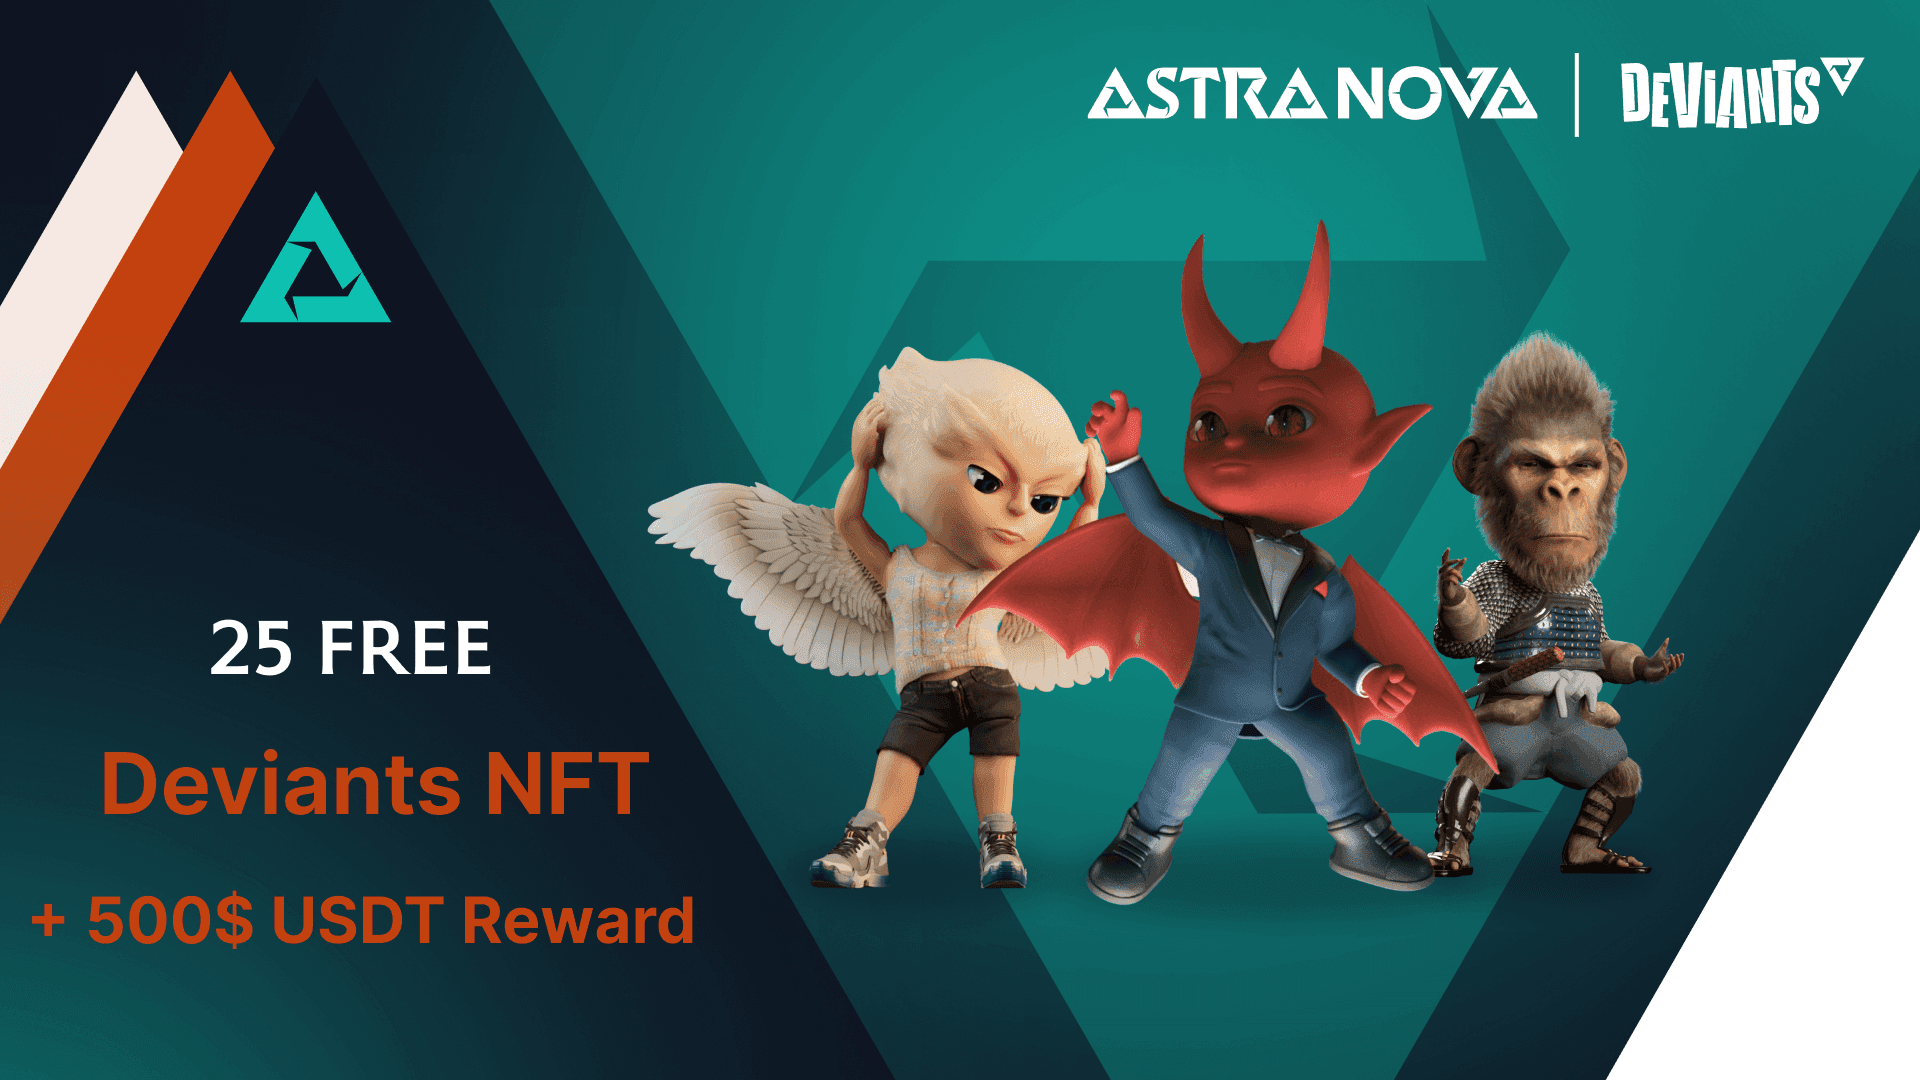 Astra Nova Deviants NFT Giveaway